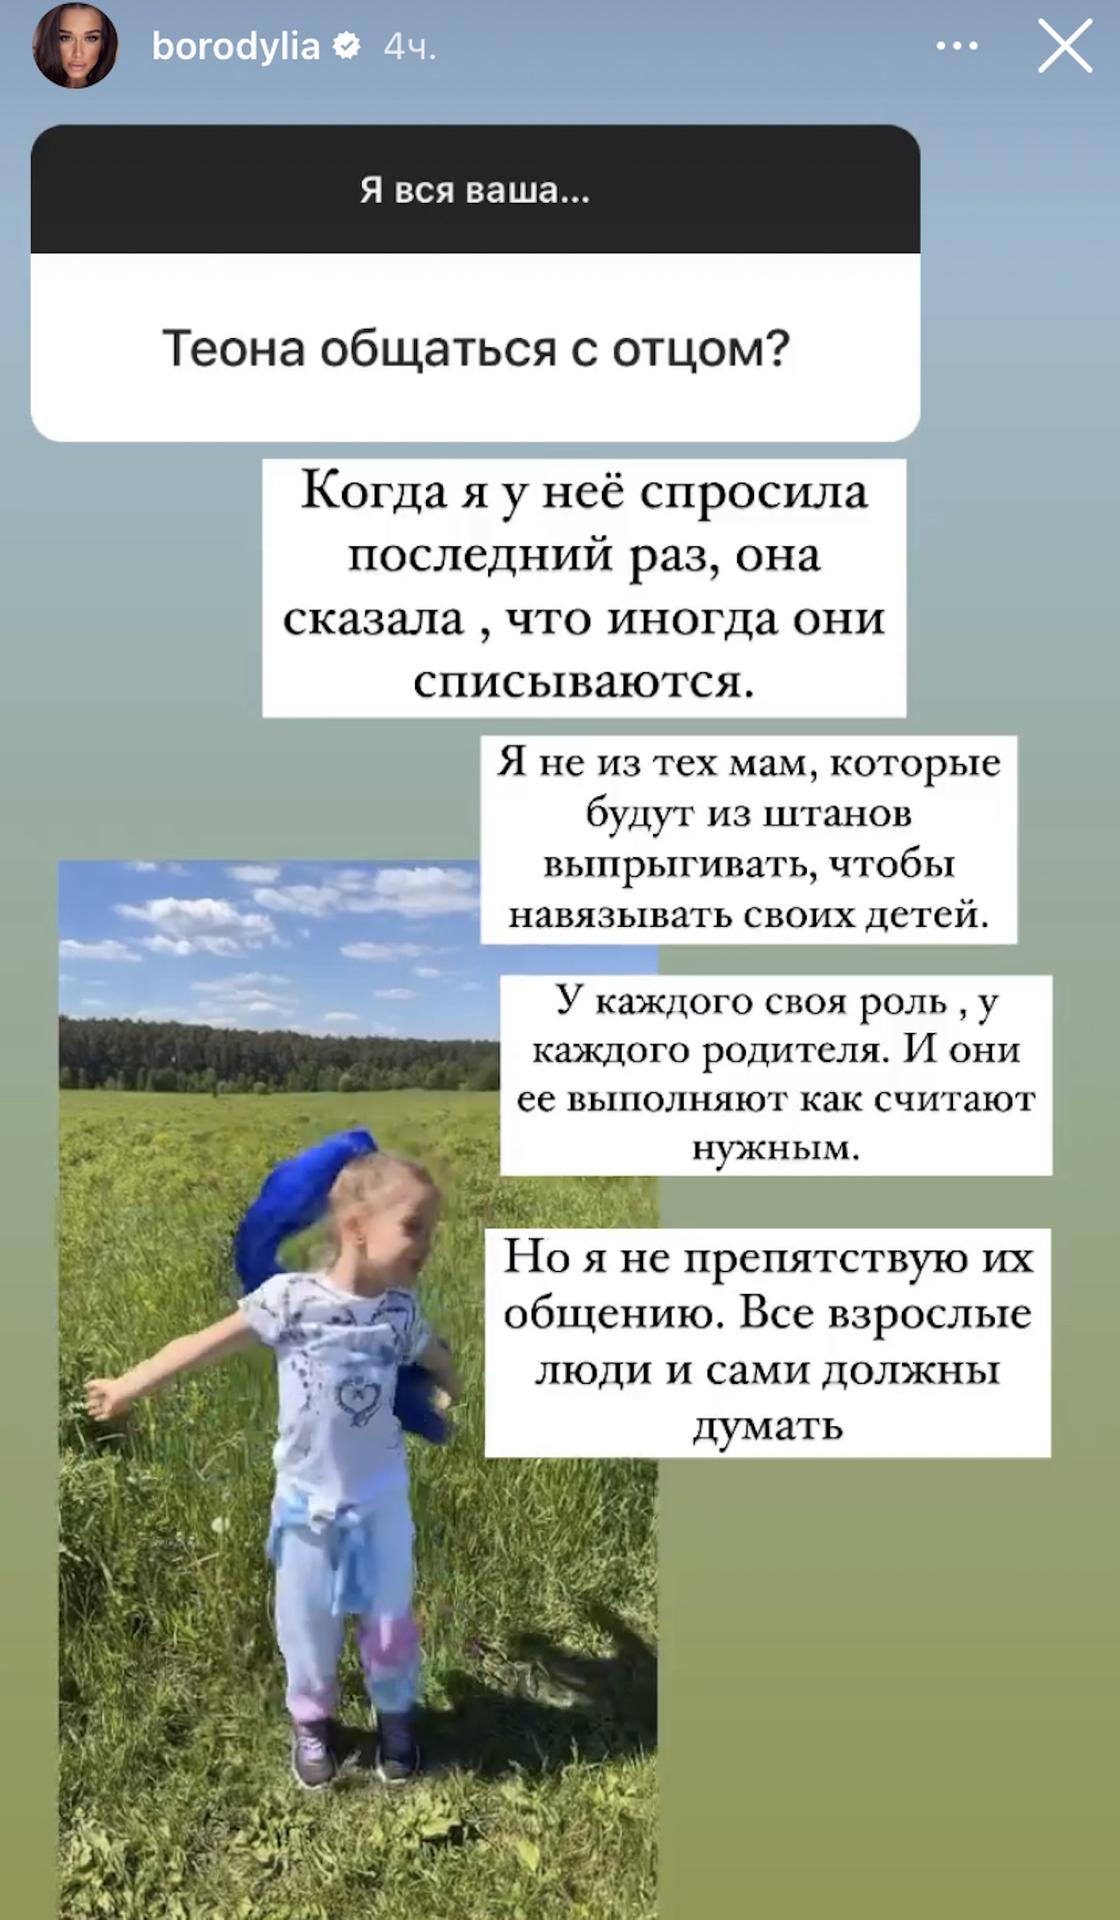 Story Ксении Бородиной